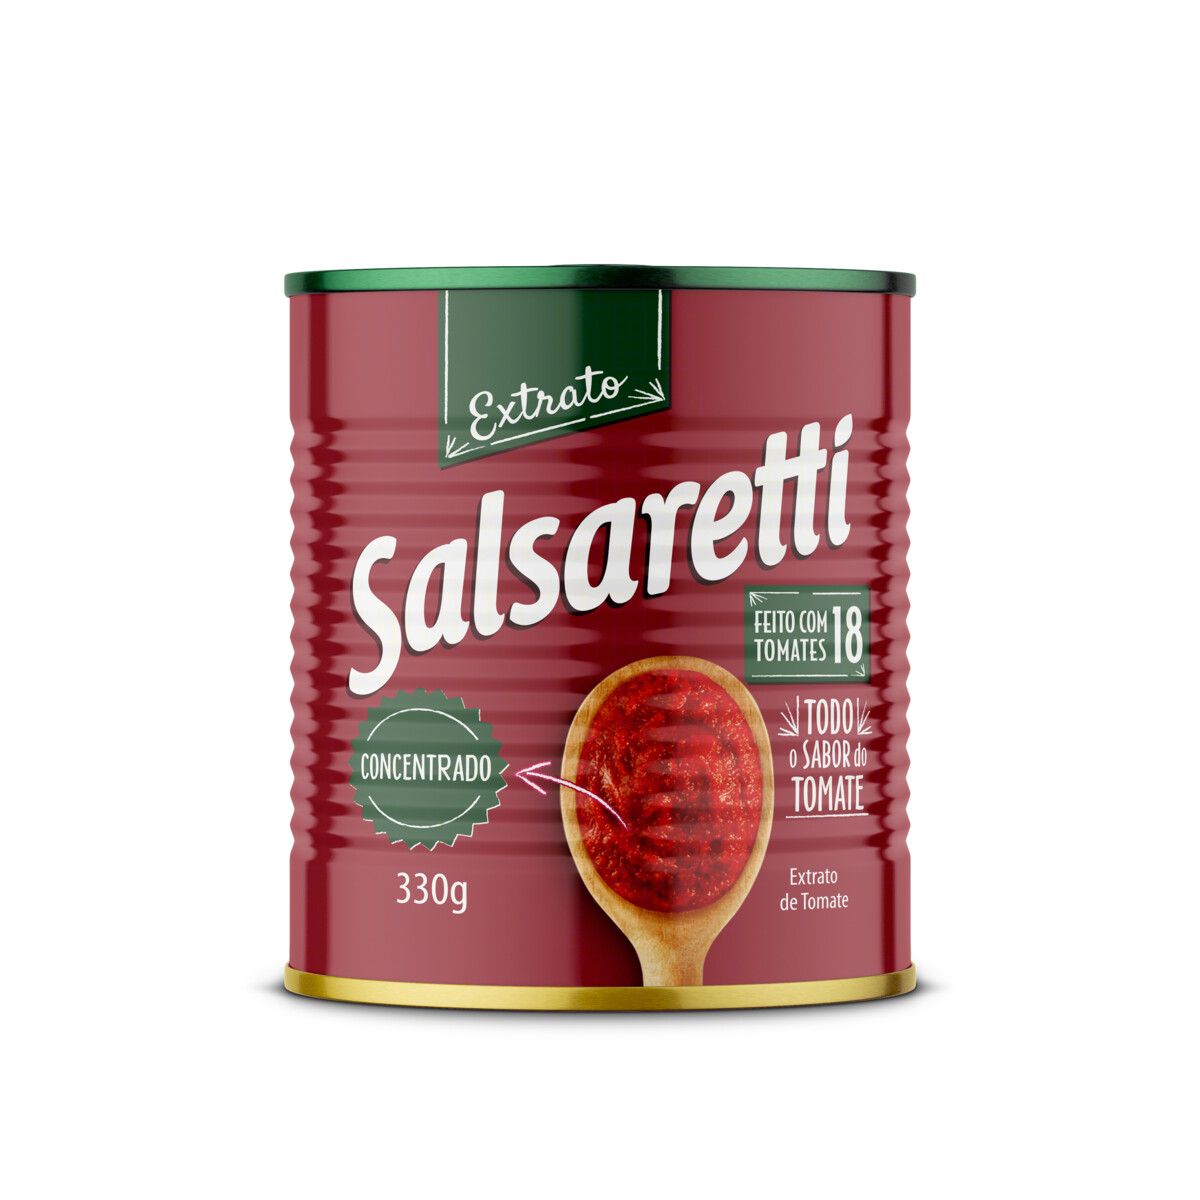 Extrato de Tomate Concentrado Salsaretti Lata 330g image number 0